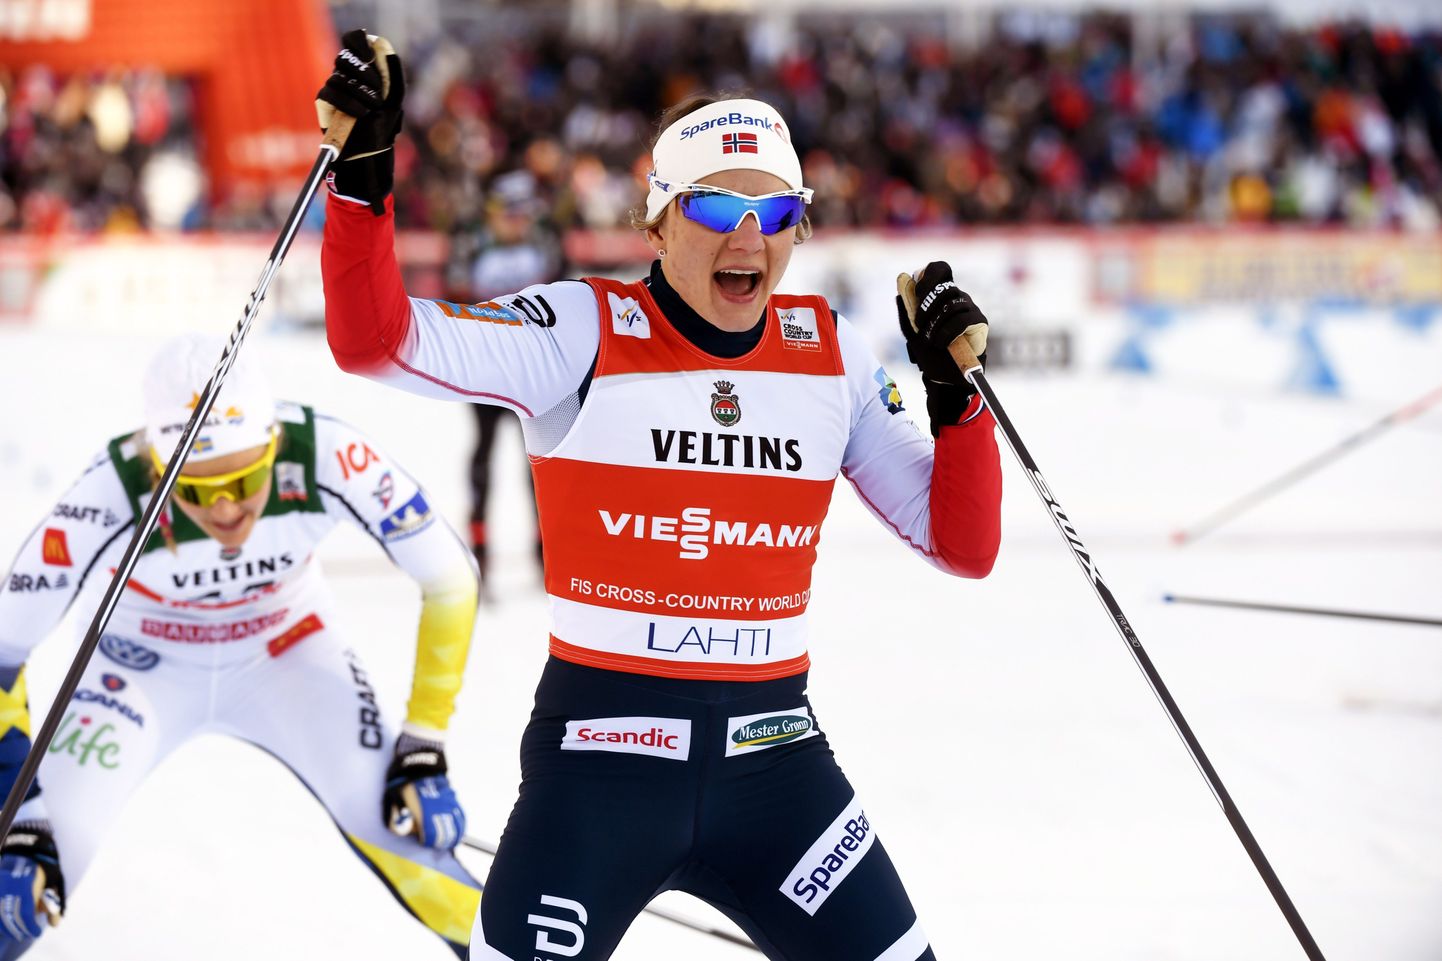 Победитель забега в спринте свободным стилем на этапе КМ в Лахти норвежка Майкен Касперсен Фалла